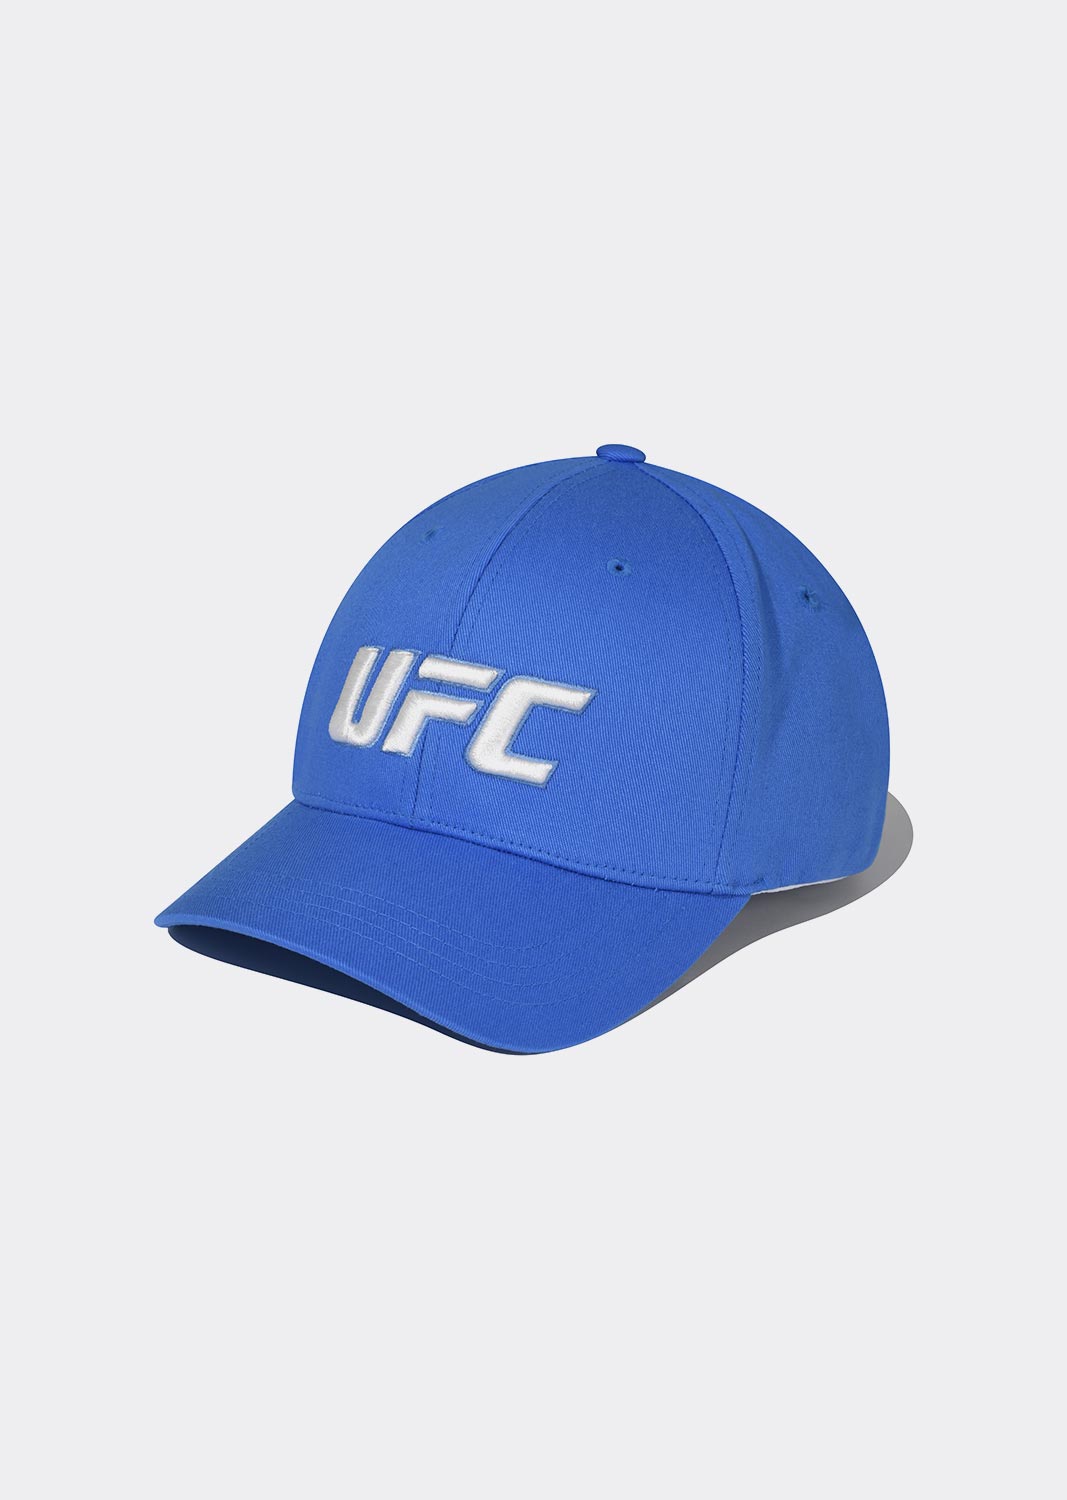 UFC 에센셜+ 플렉스핏 볼캡 블루 U4HWU1305BL